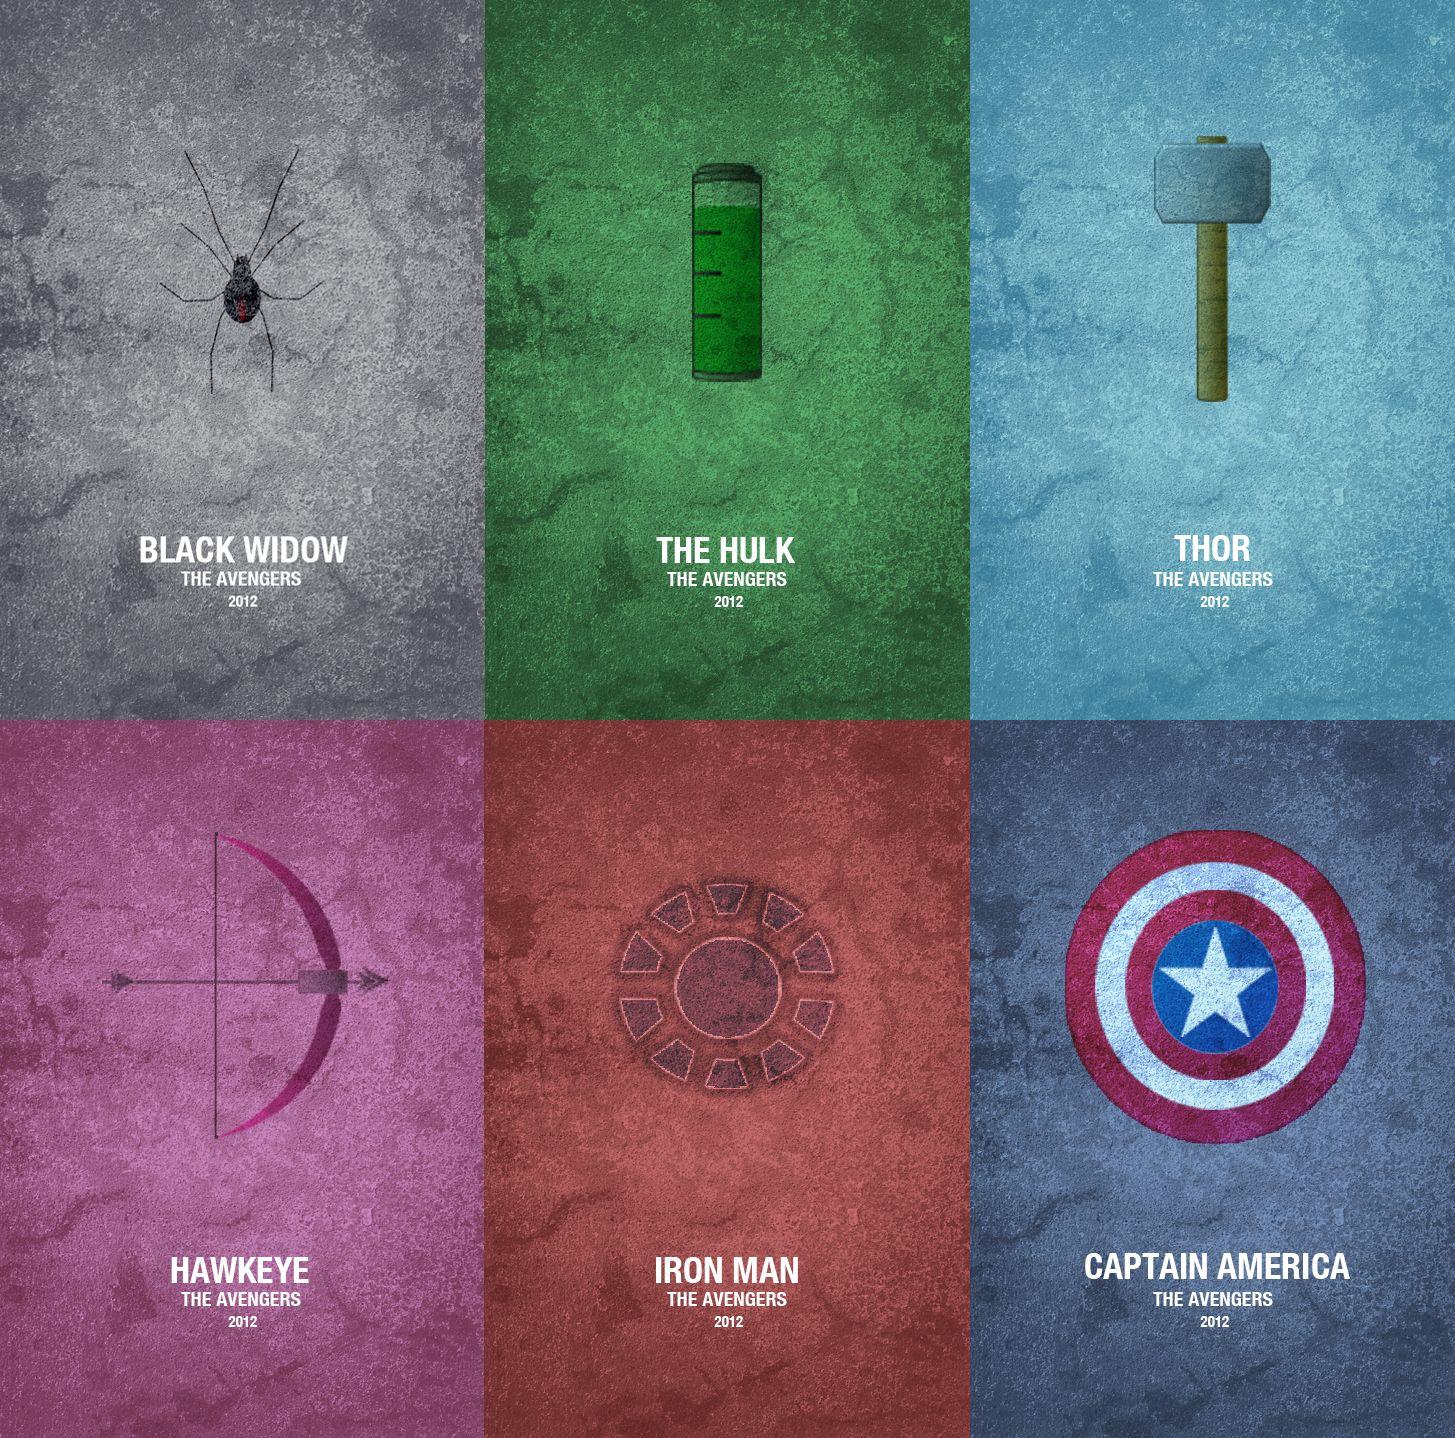 pic new posts: Galaxy S3 Hulk Wallpaper